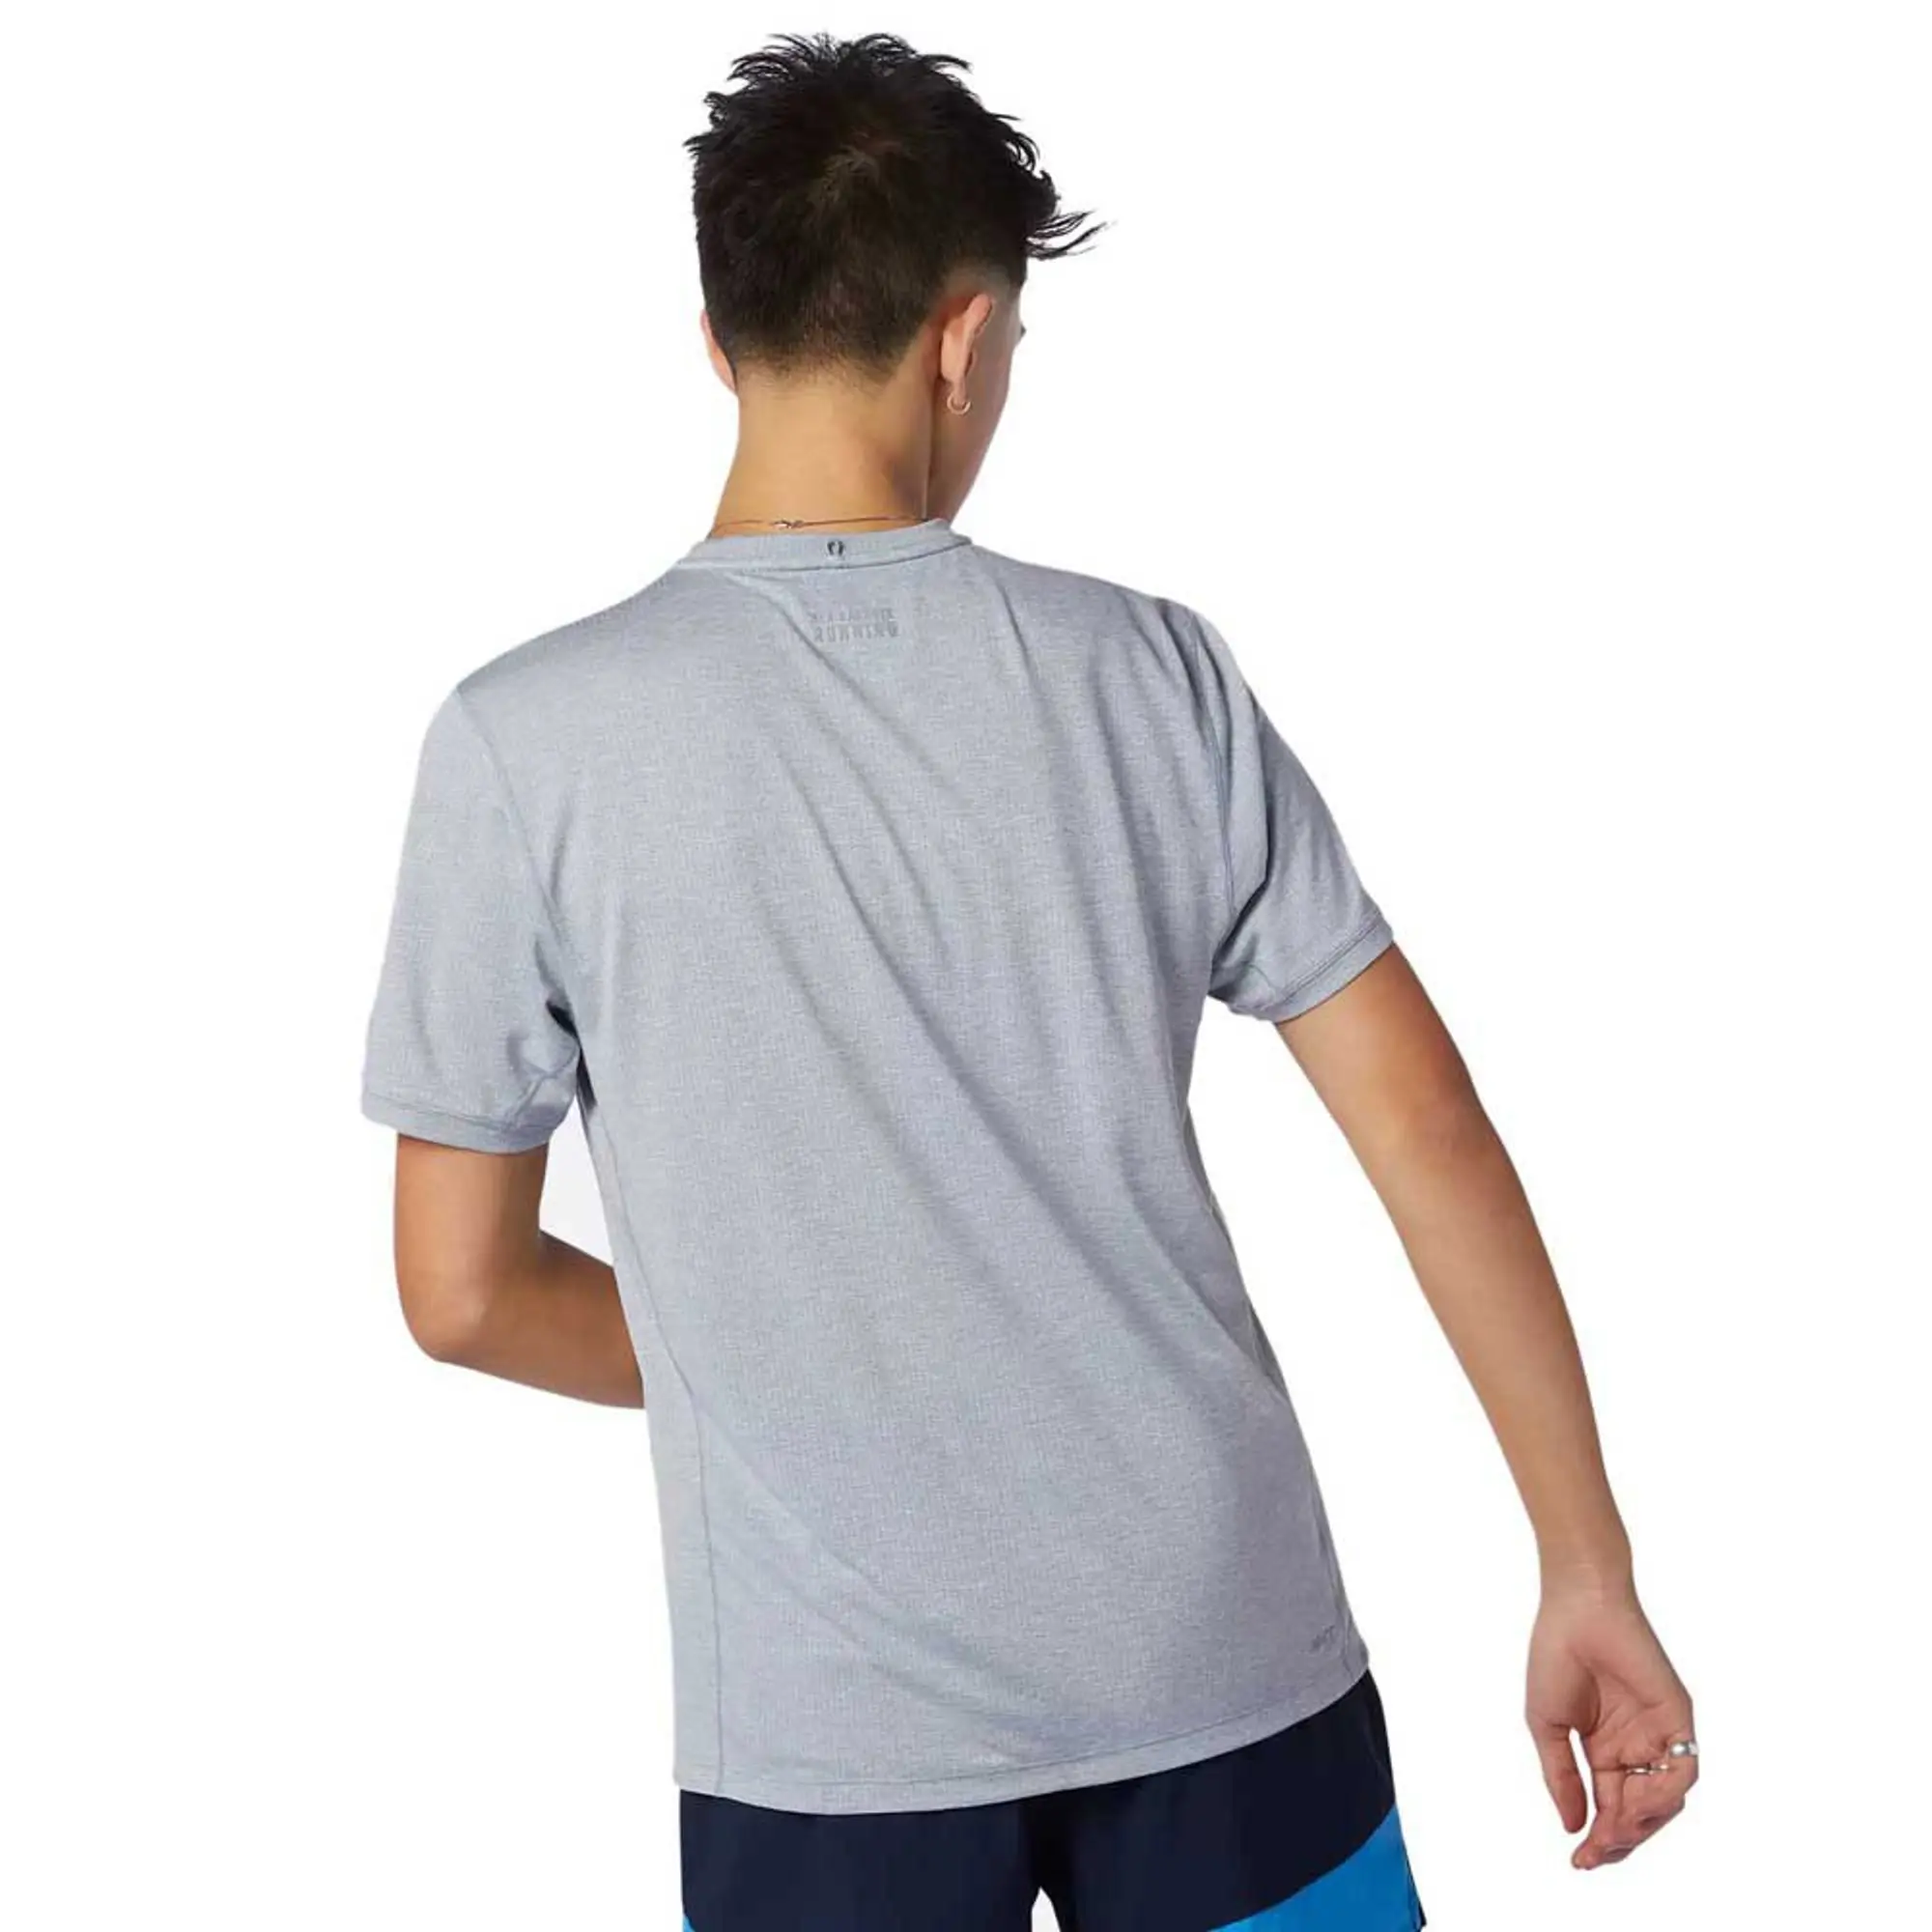 New Balance Impact Run Mens Running T-Shirt - Orange